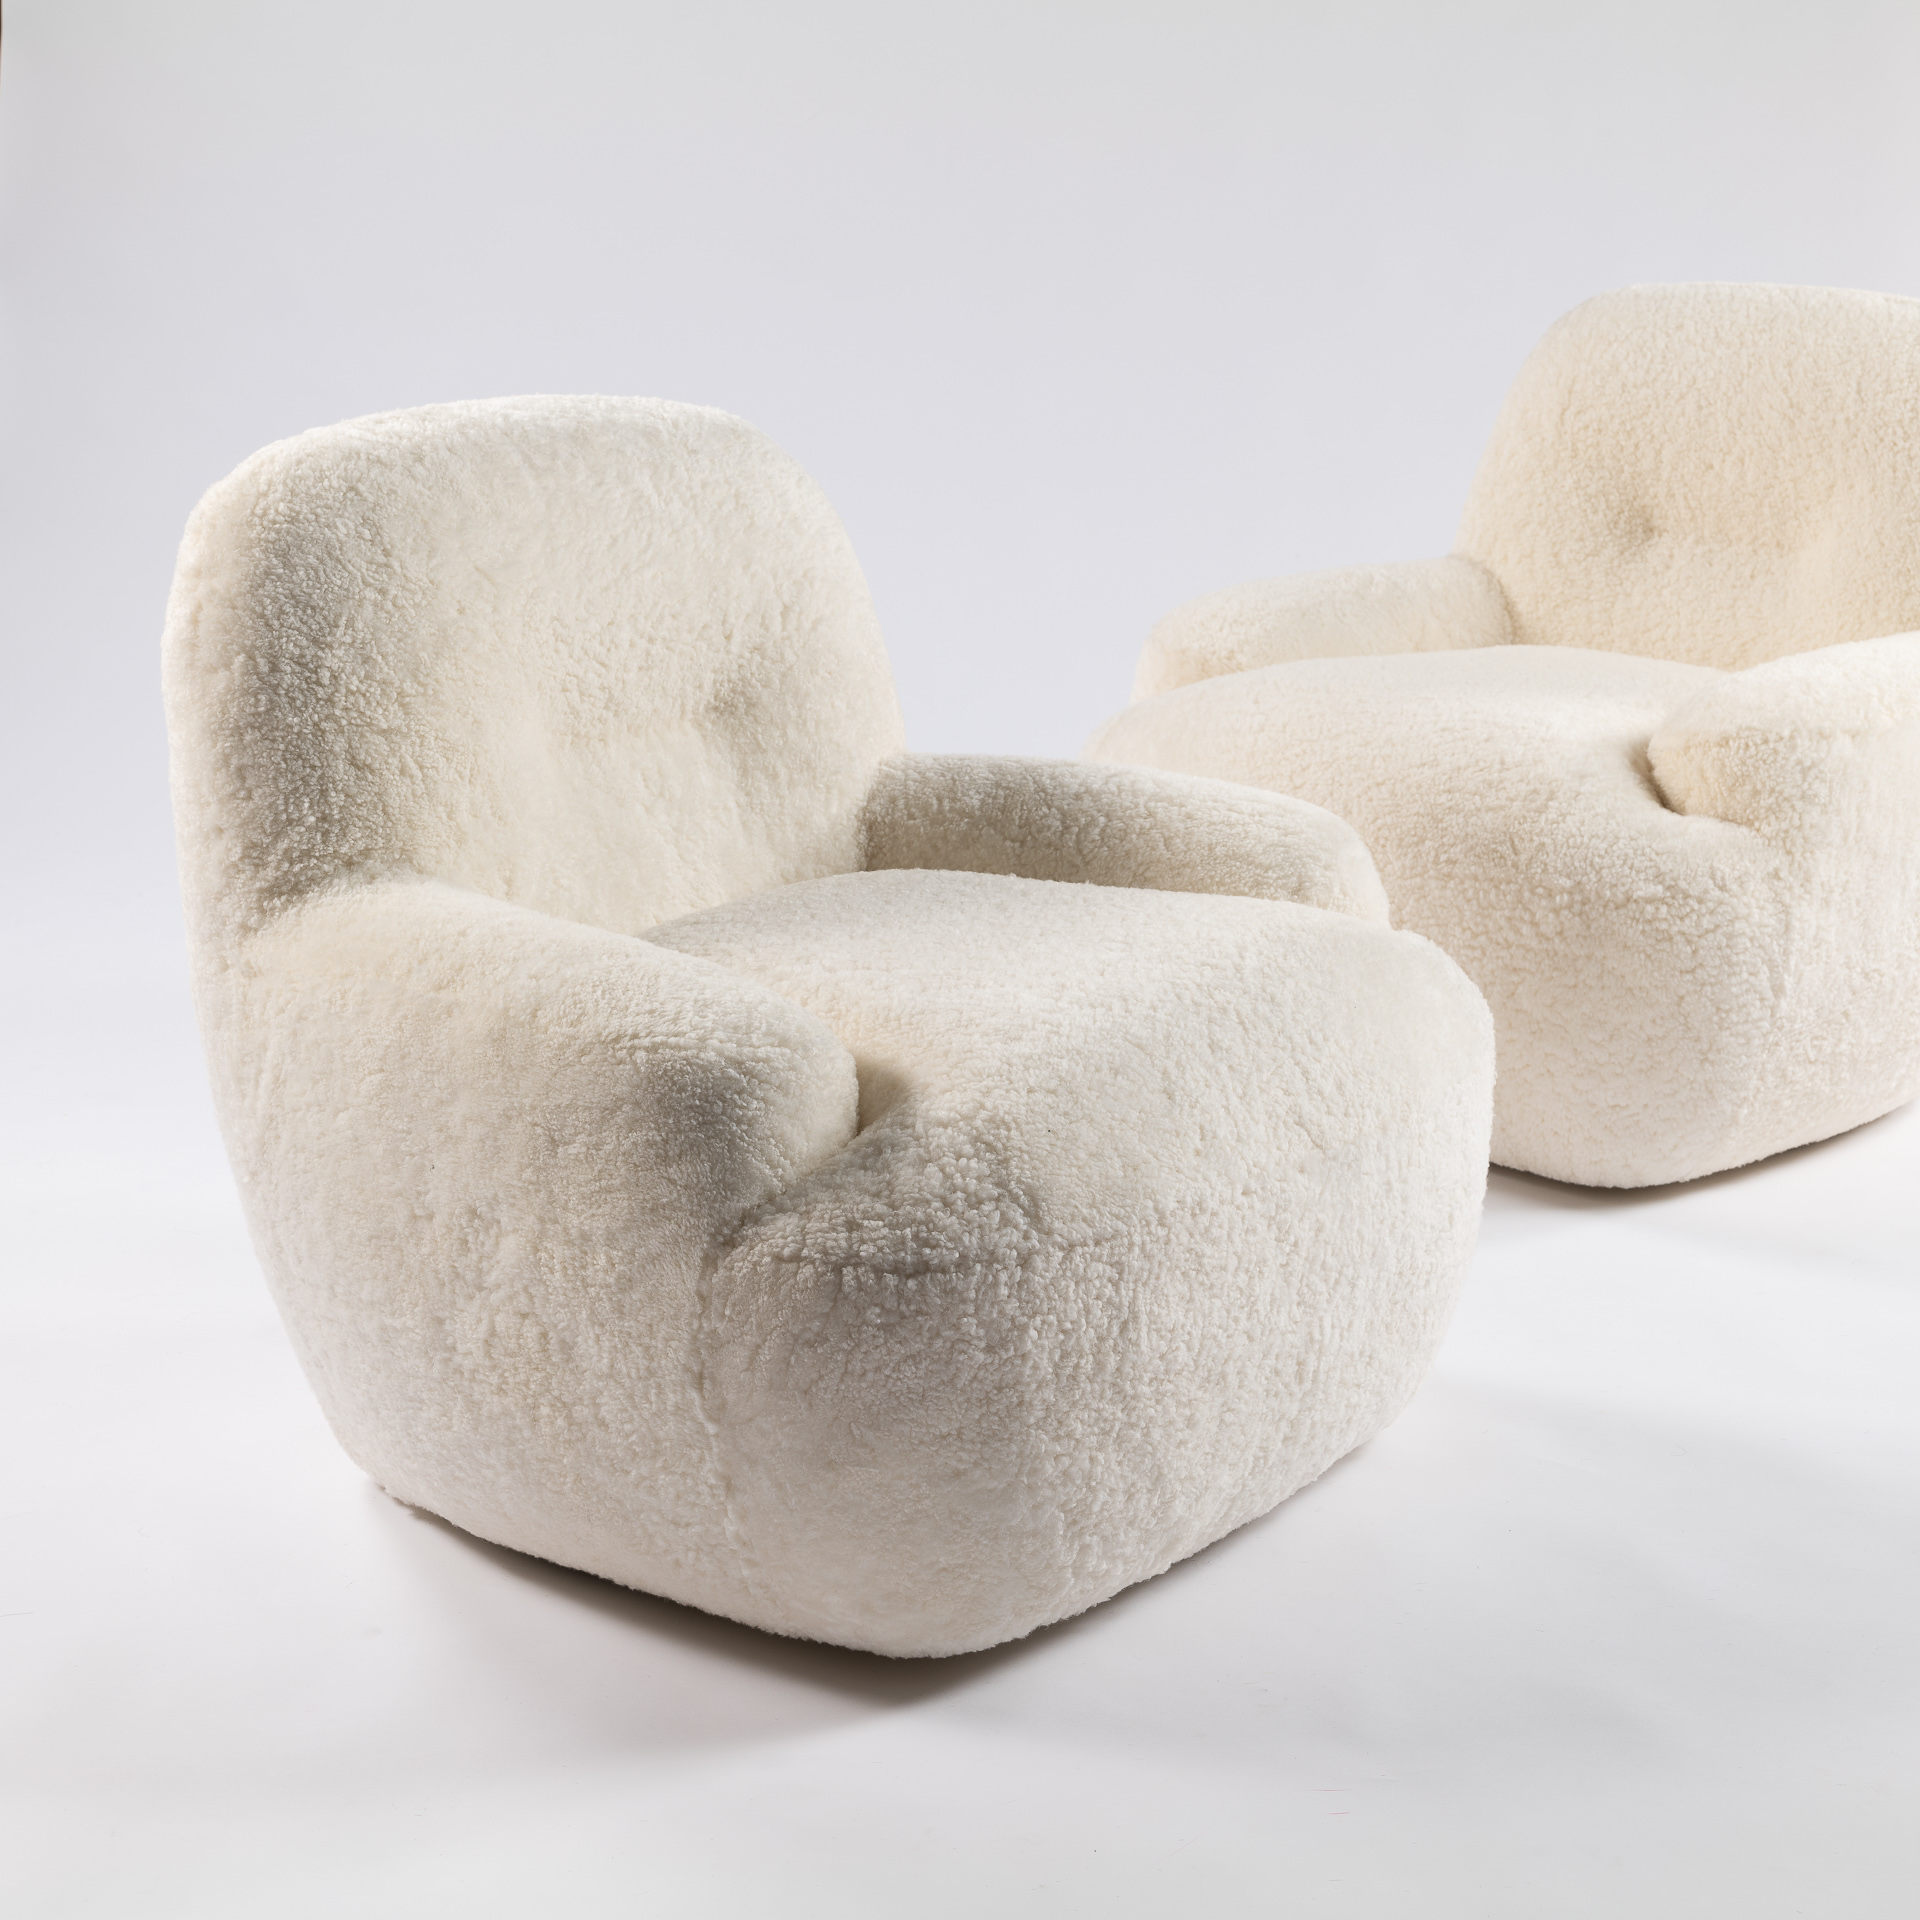 Décoration luxueuse avec ce fauteuil blanc au design très contemporain, au confort incroyable.